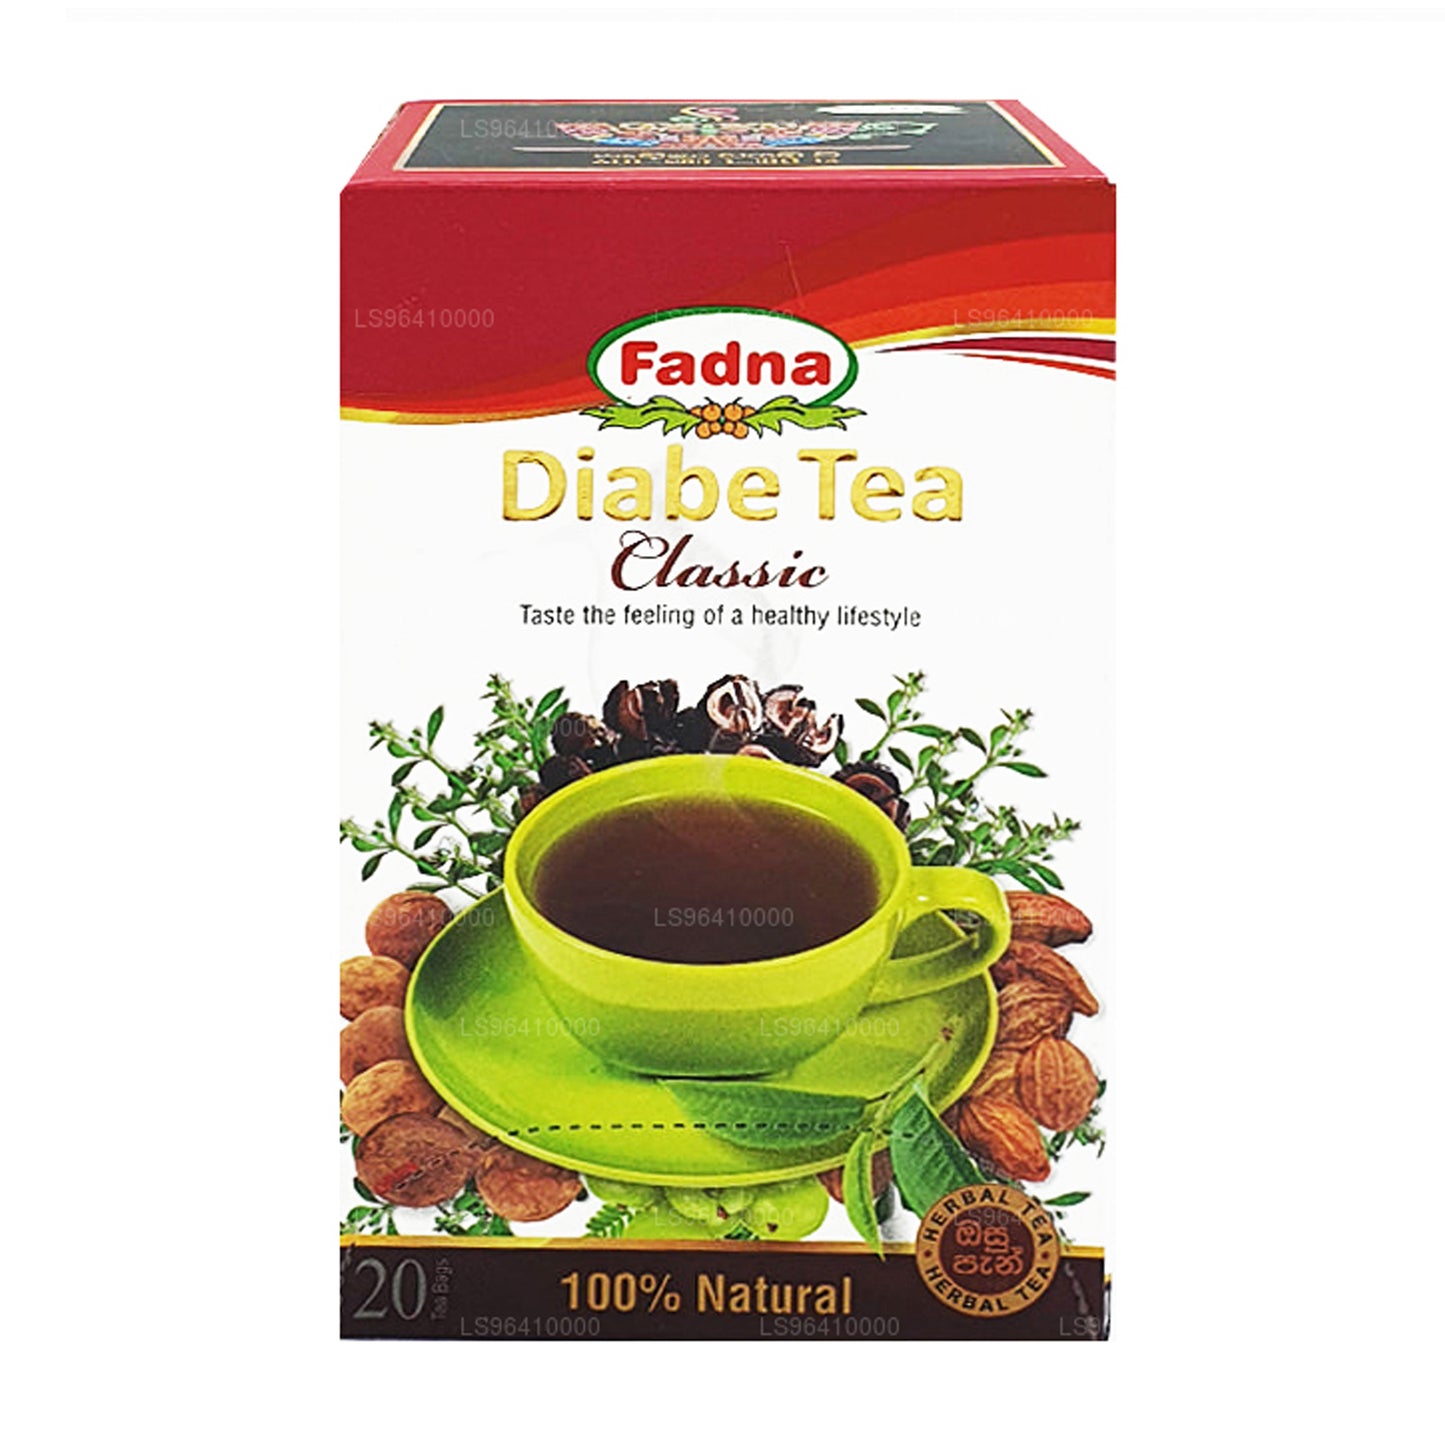 Fadna Diabe Tea (40g) 20 tepåsar